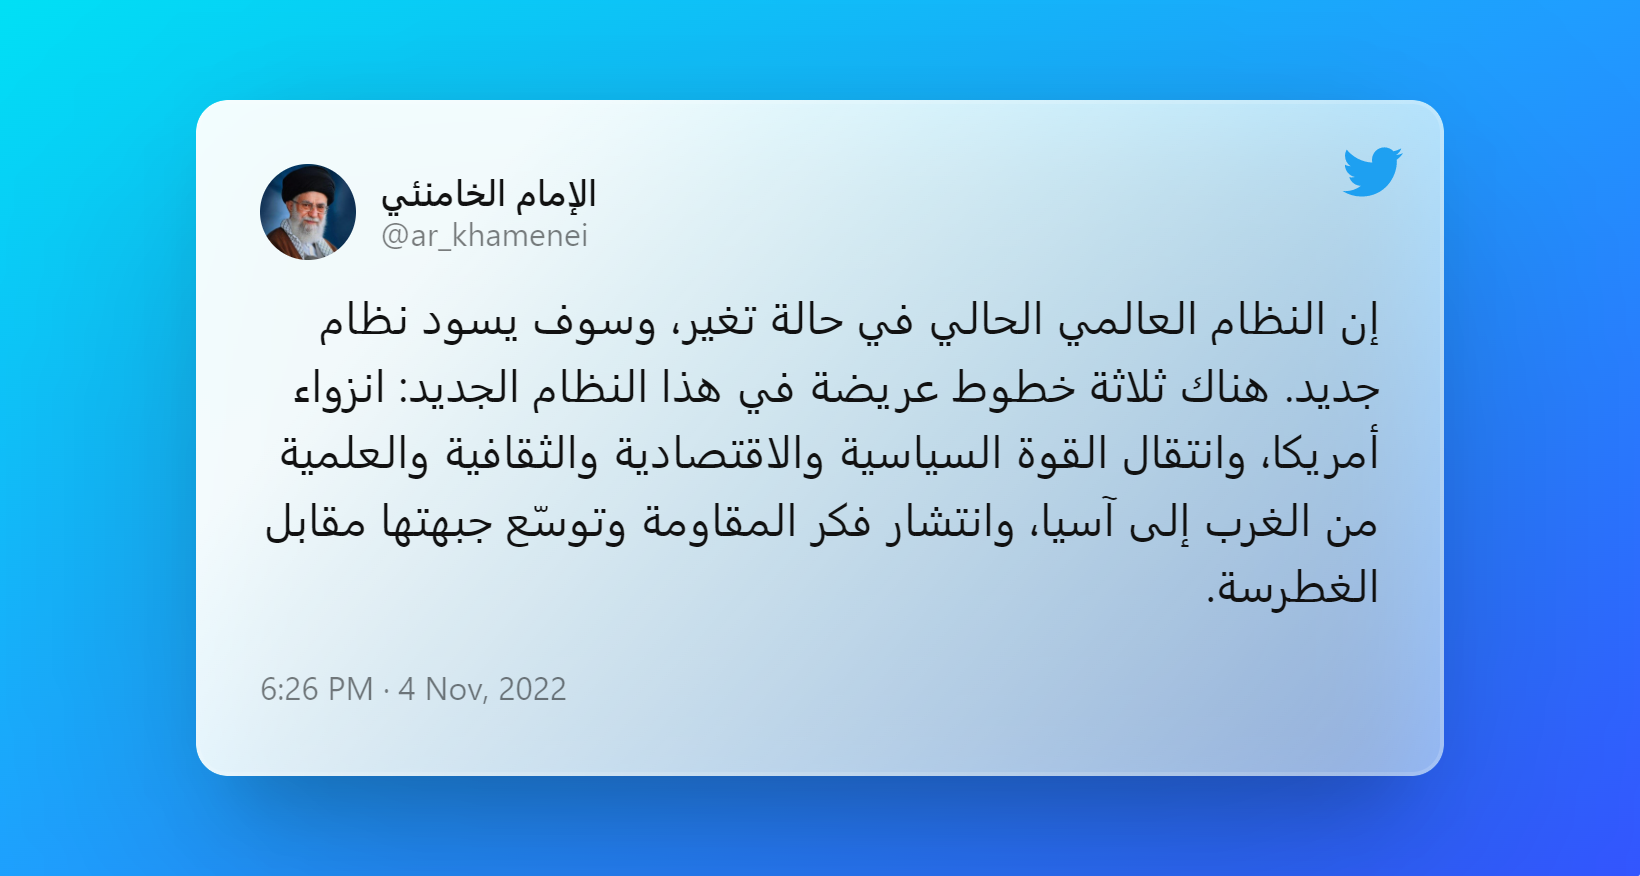 الإمام الخامنئي تويتر (3)